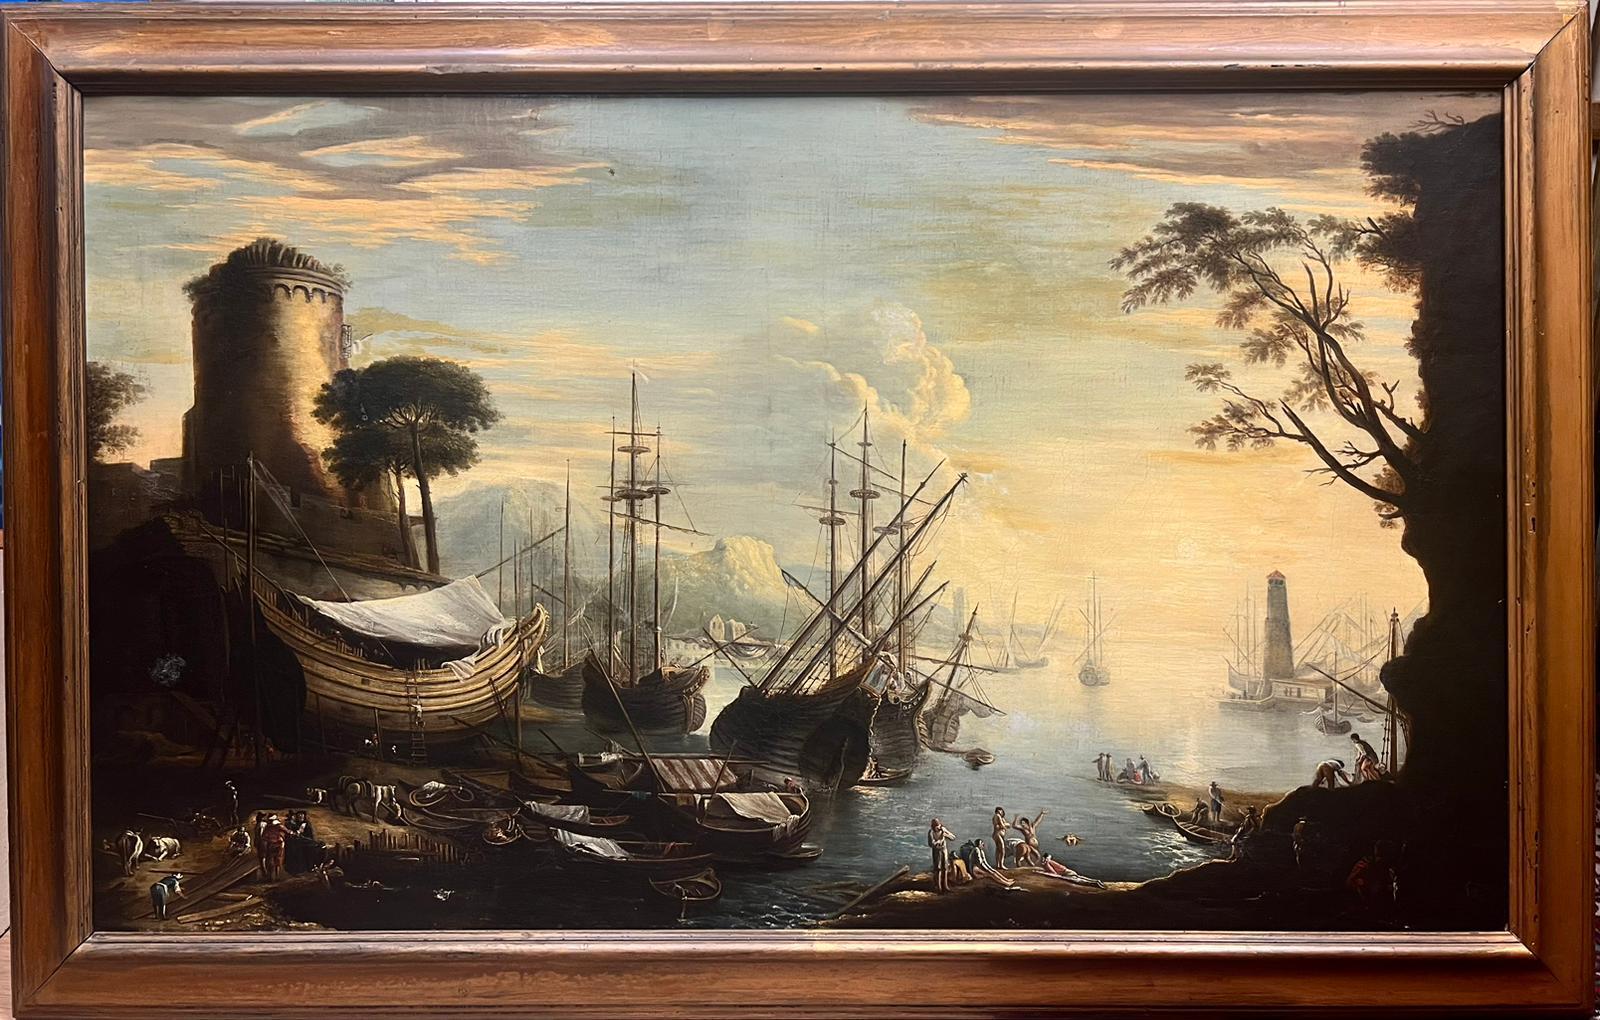 Grande peinture à l'huile italienne du 18ème siècle représentant un navire marchand et de nombreuses figures - Painting de 18thC Italian Old Master